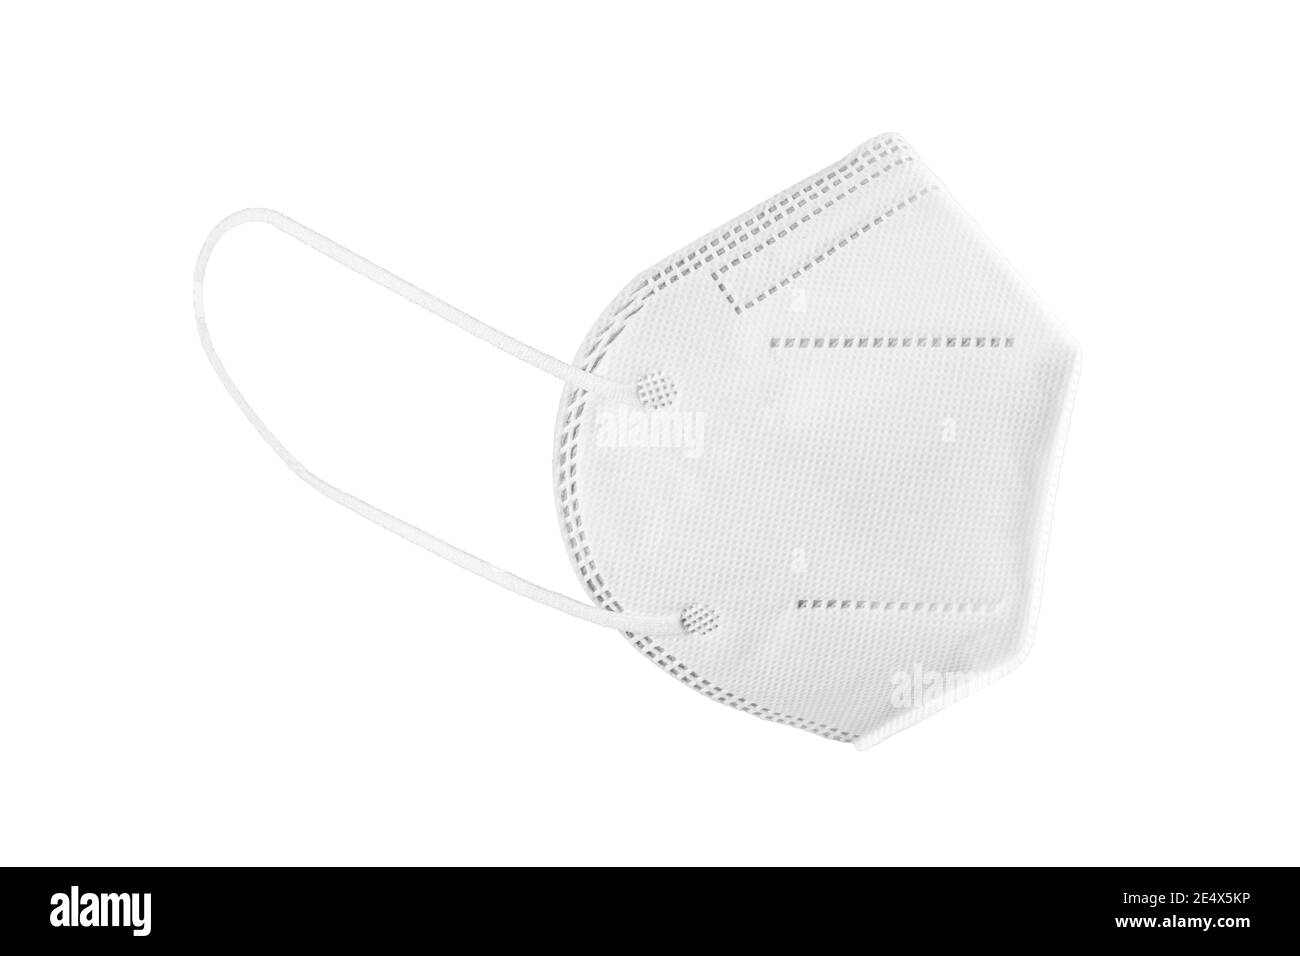 Máscara facial KN95, FFP2, FFP3 aislada sobre fondo blanco. Equipo de protección personal contra el coronavirus Covid-19 Foto de stock